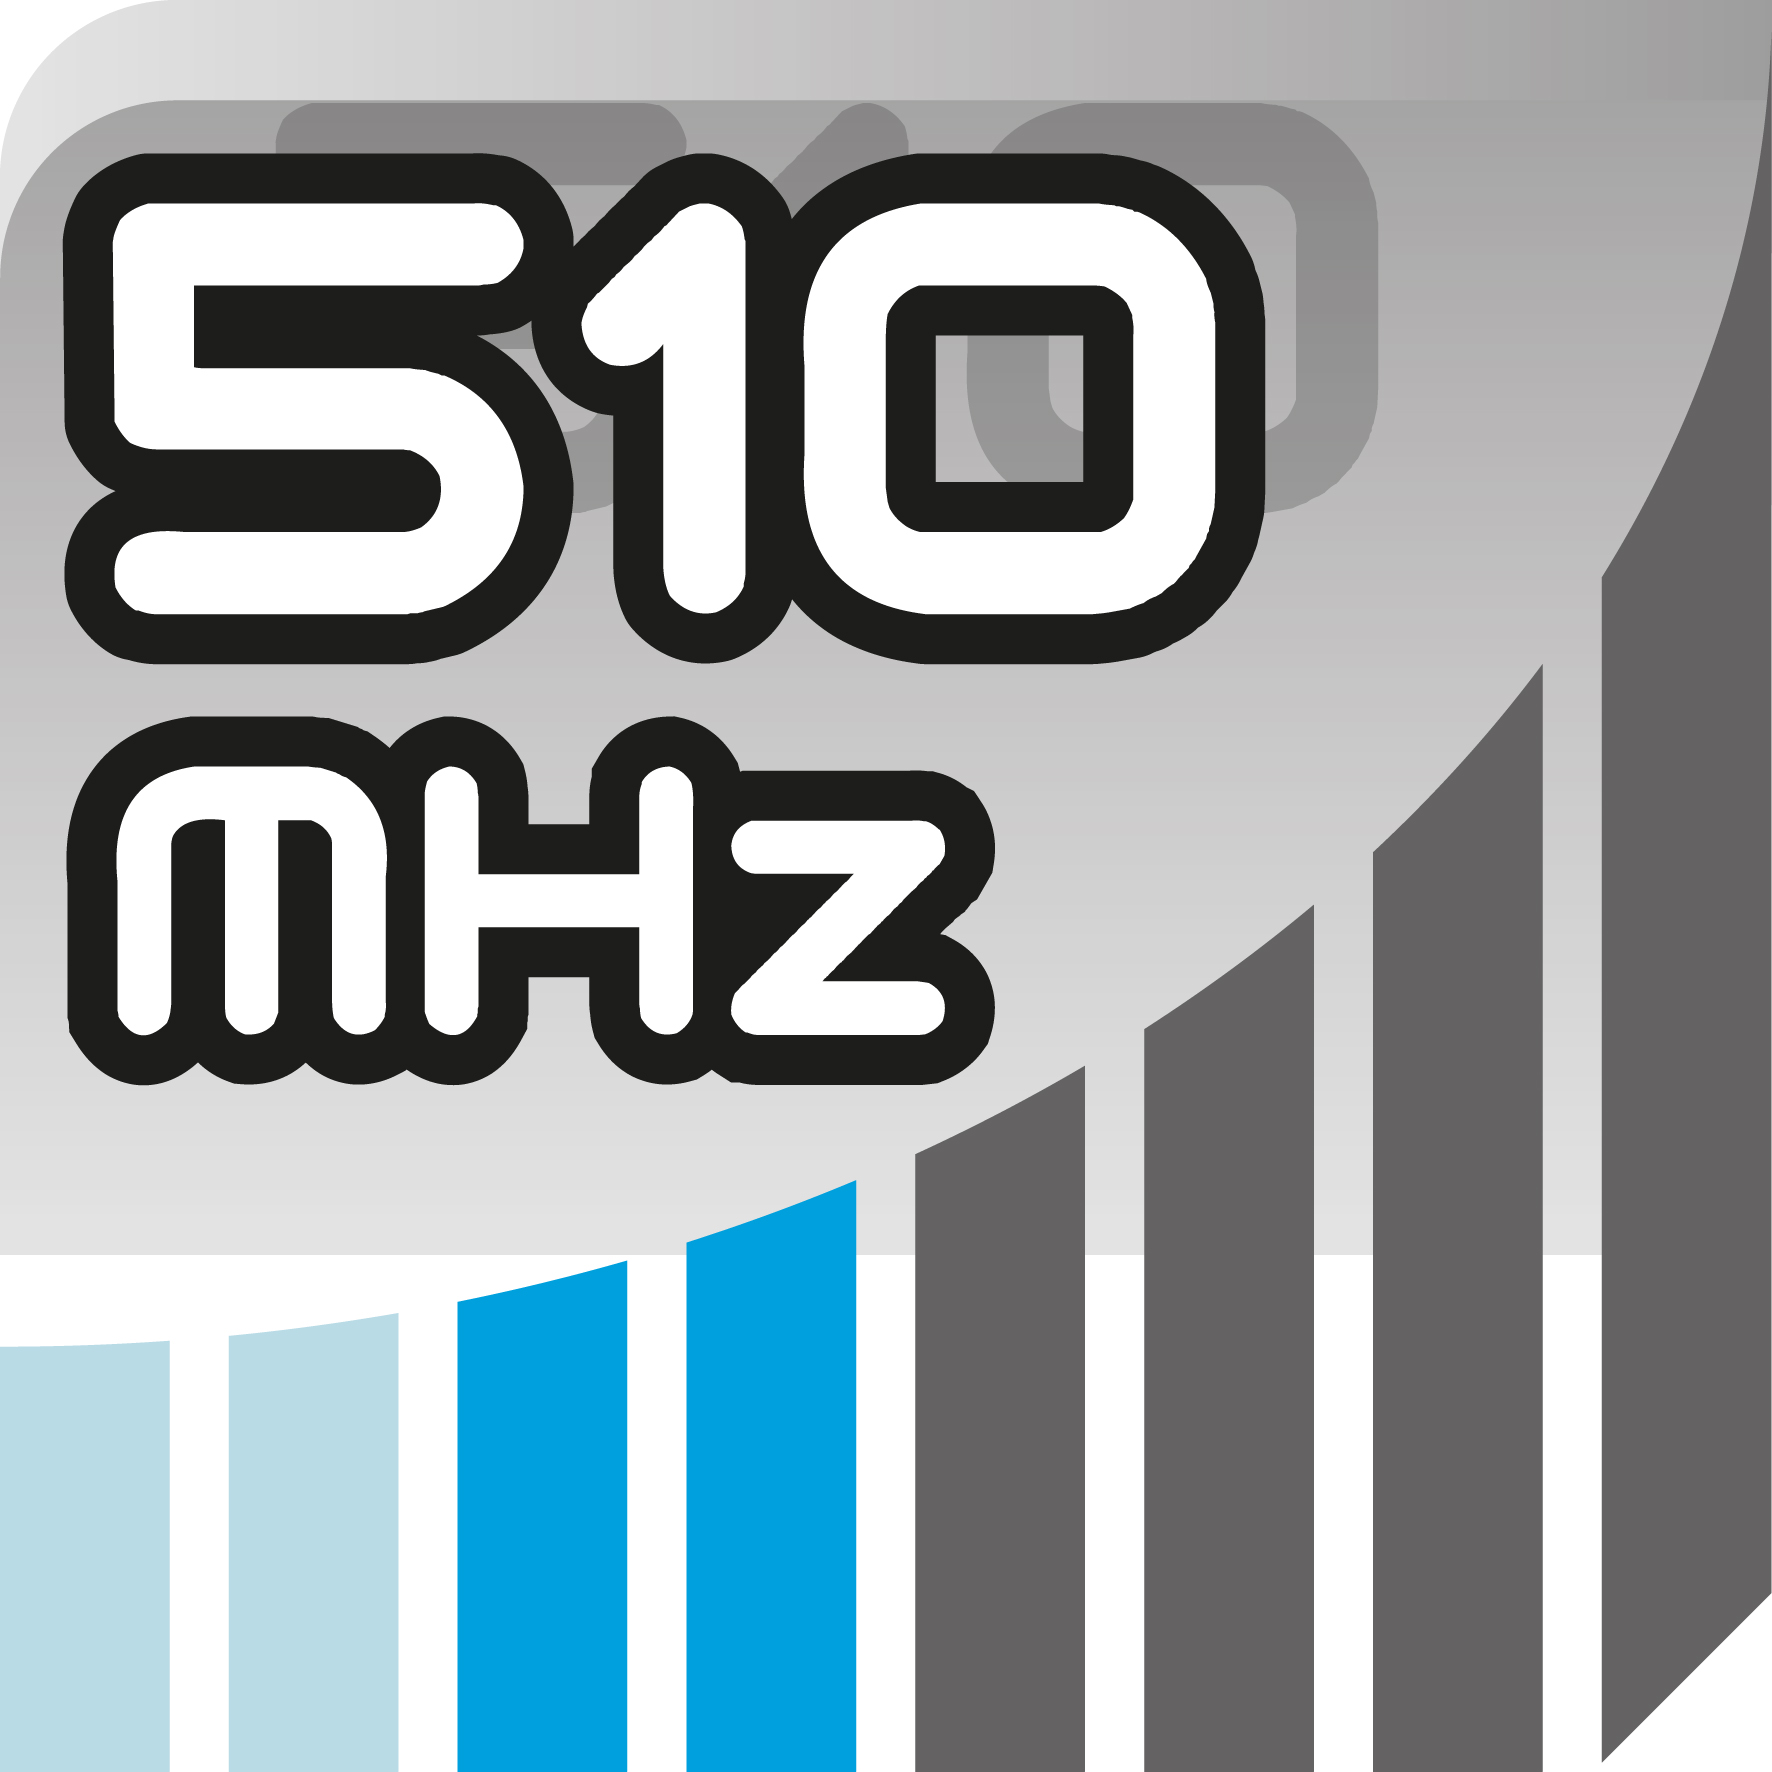 510 MHz